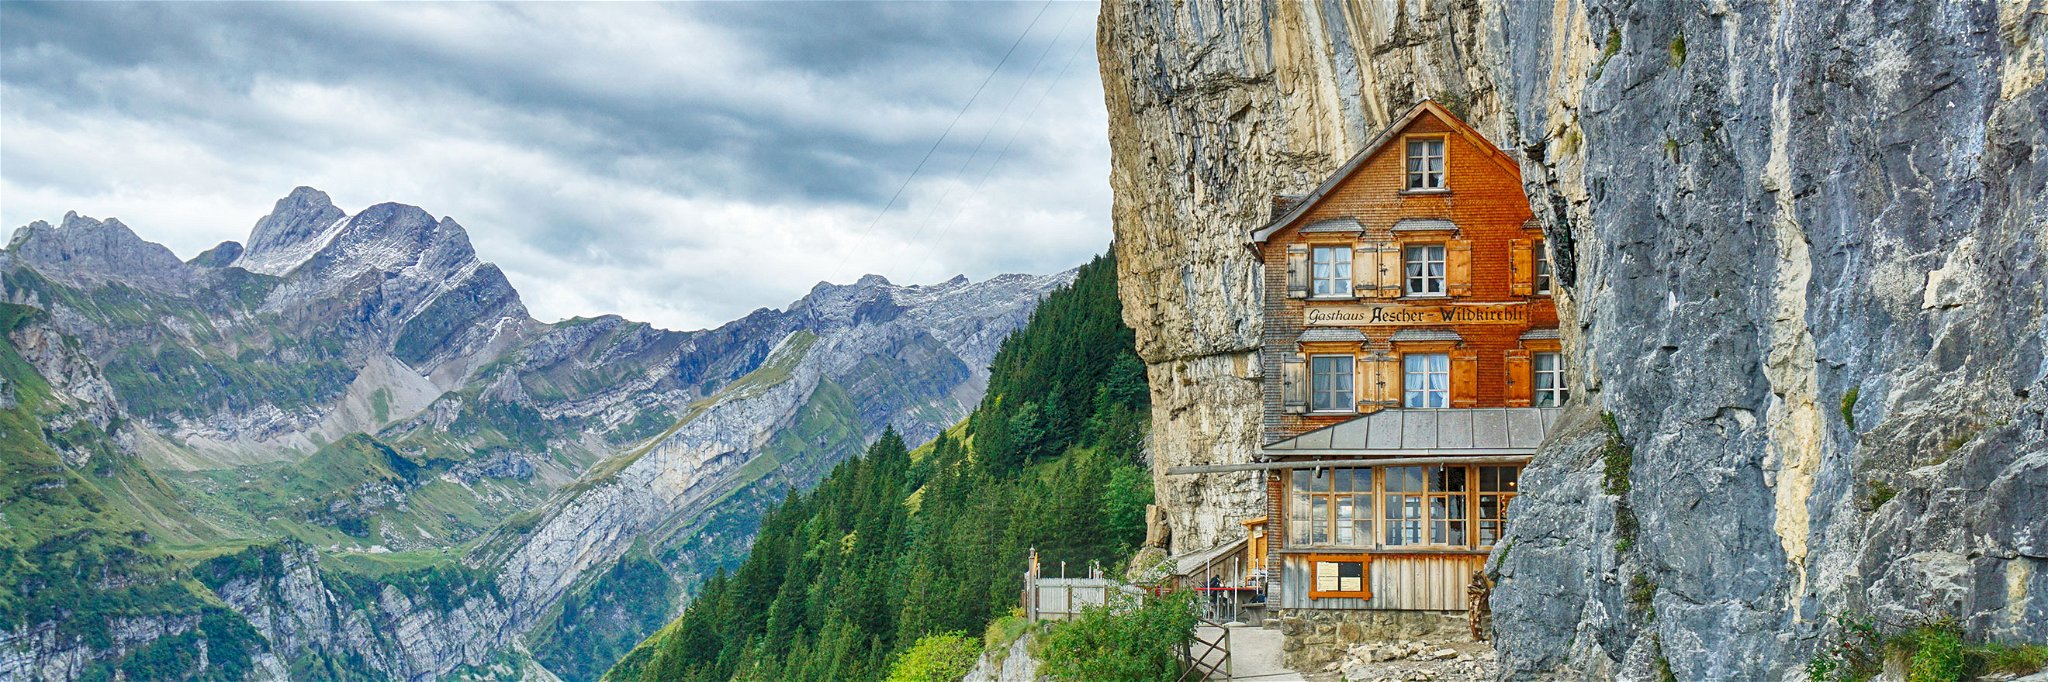 Das Berggasthaus «Äscher-Wildkirchli» wird mit neuem Konzept von der Pfefferbeere AG übernommen.